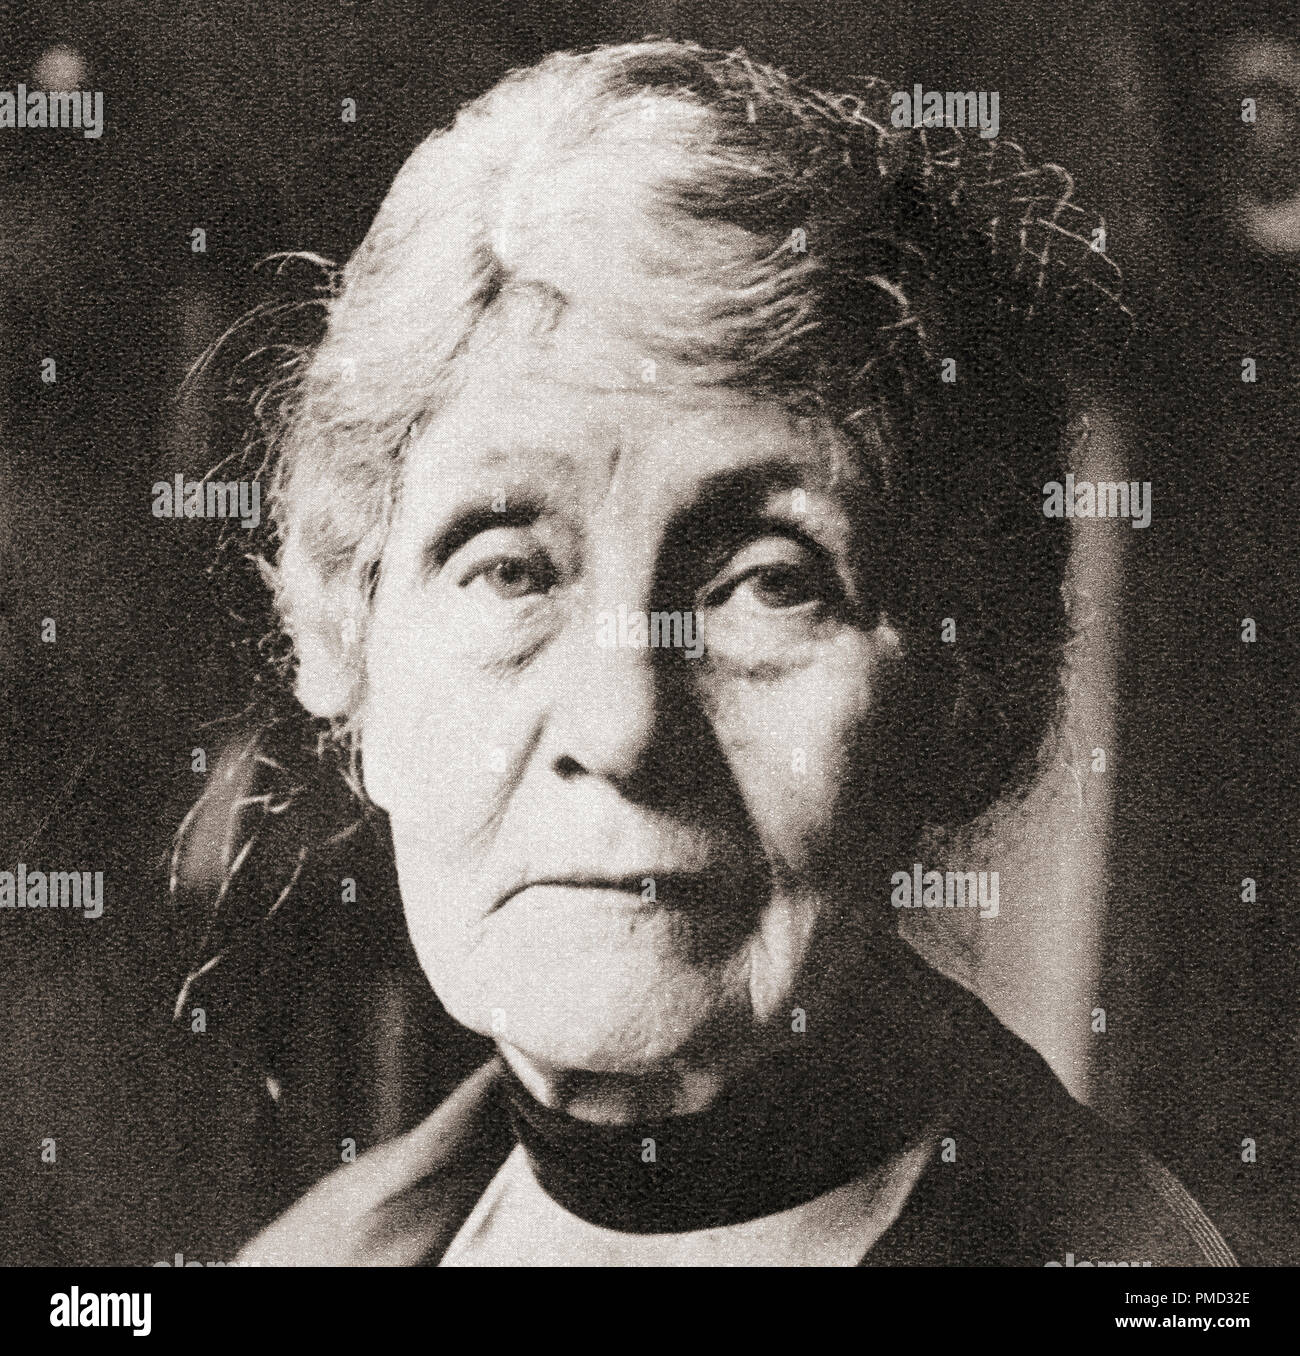 Emmeline Pankhurst, née Goulden, 1858 - 1928. British attivista politico e leader del British movimento delle Suffragette. Da questi straordinari anni, pubblicato in 1938. Foto Stock